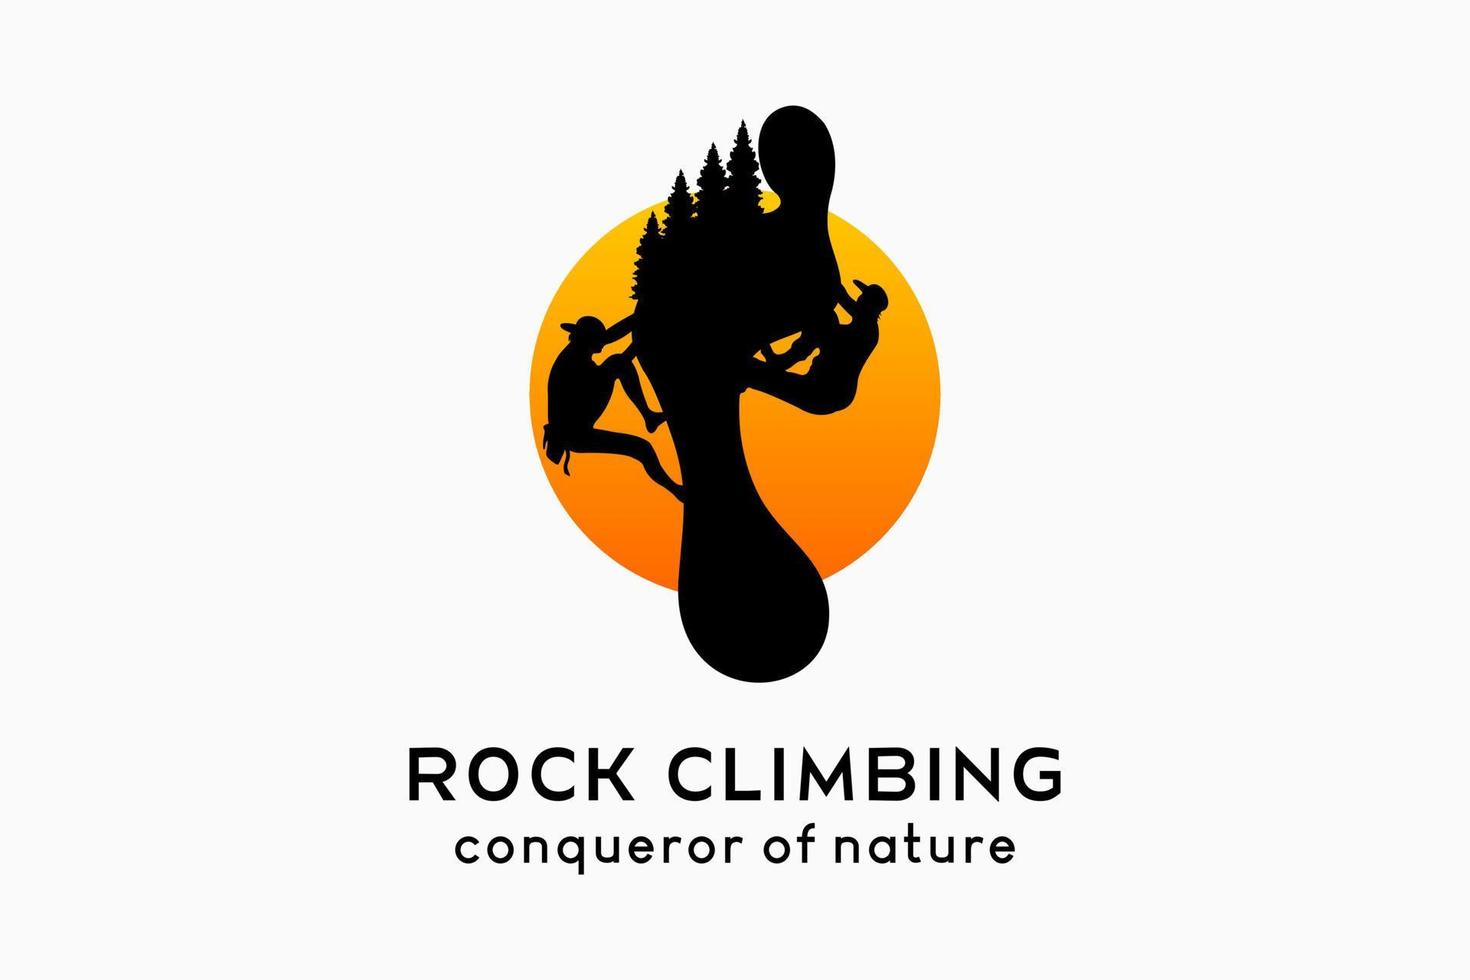 création de logo d'escalade, silhouettes de personnes escaladant des falaises et silhouettes d'empreintes humaines se mêlant à la nature en points vecteur